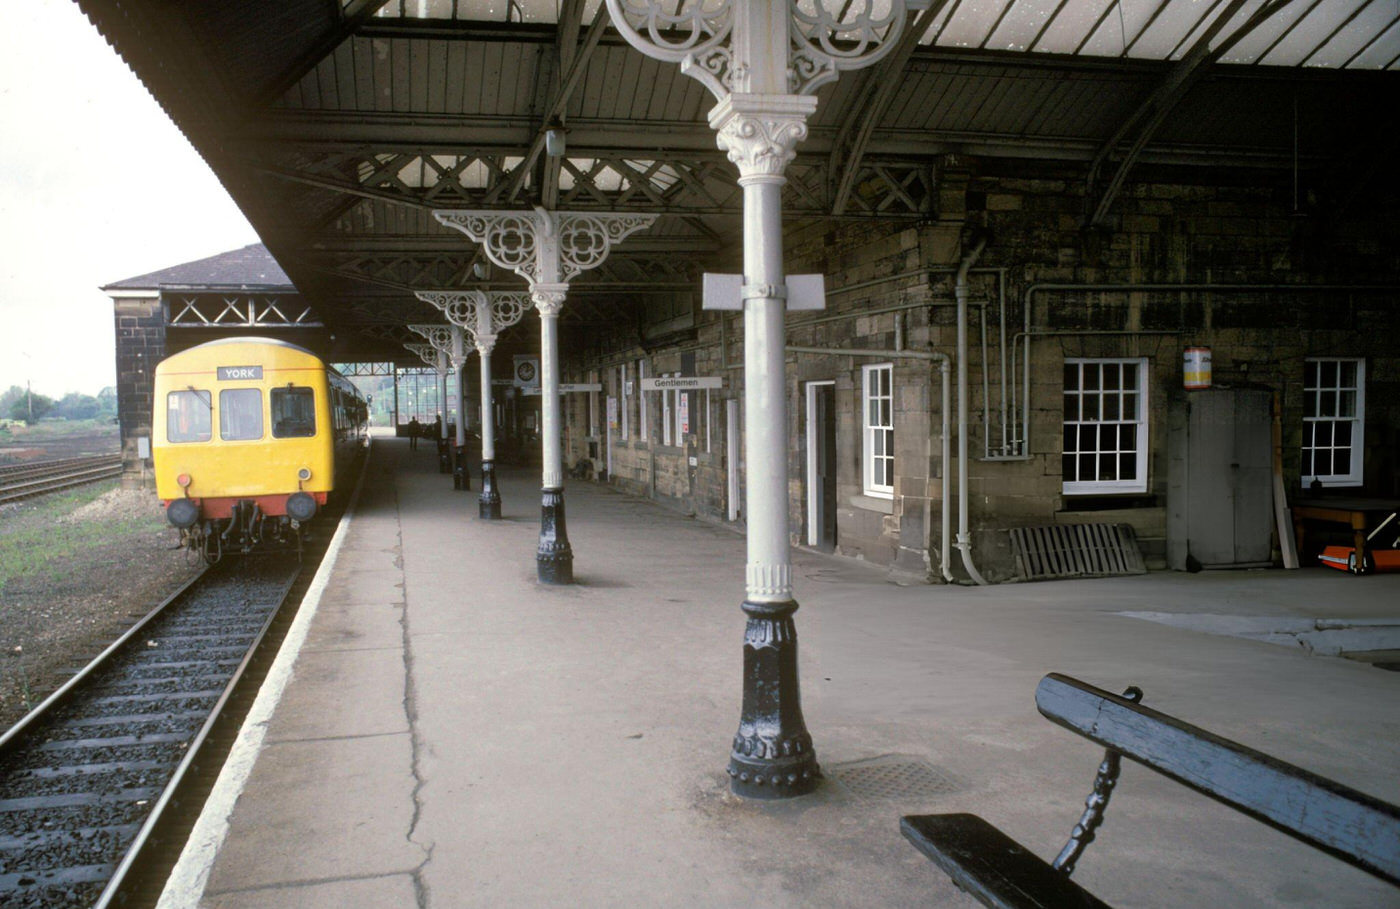 Platform at Malton Station, 1980s.